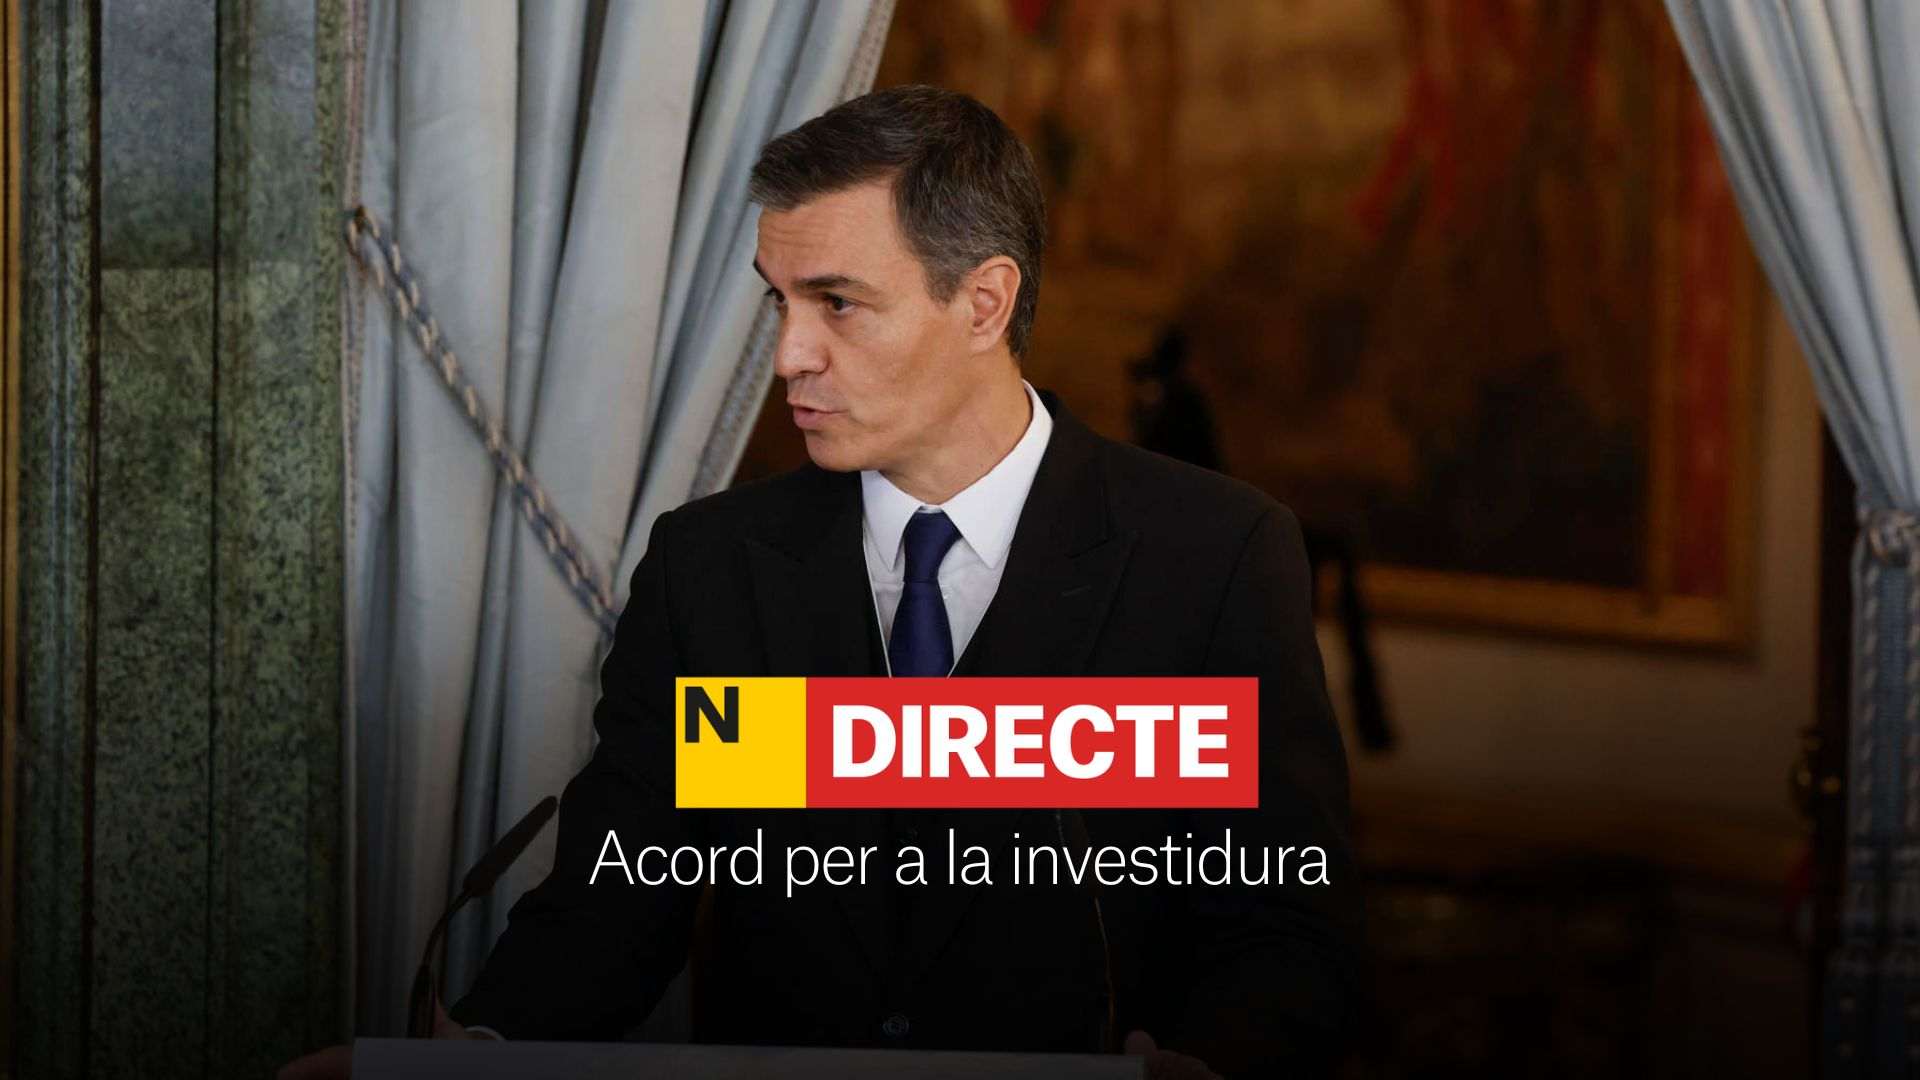 Acuerdo para la investidura de Pedro Sánchez, DIRECTO | Últimas noticias del 9 de noviembre